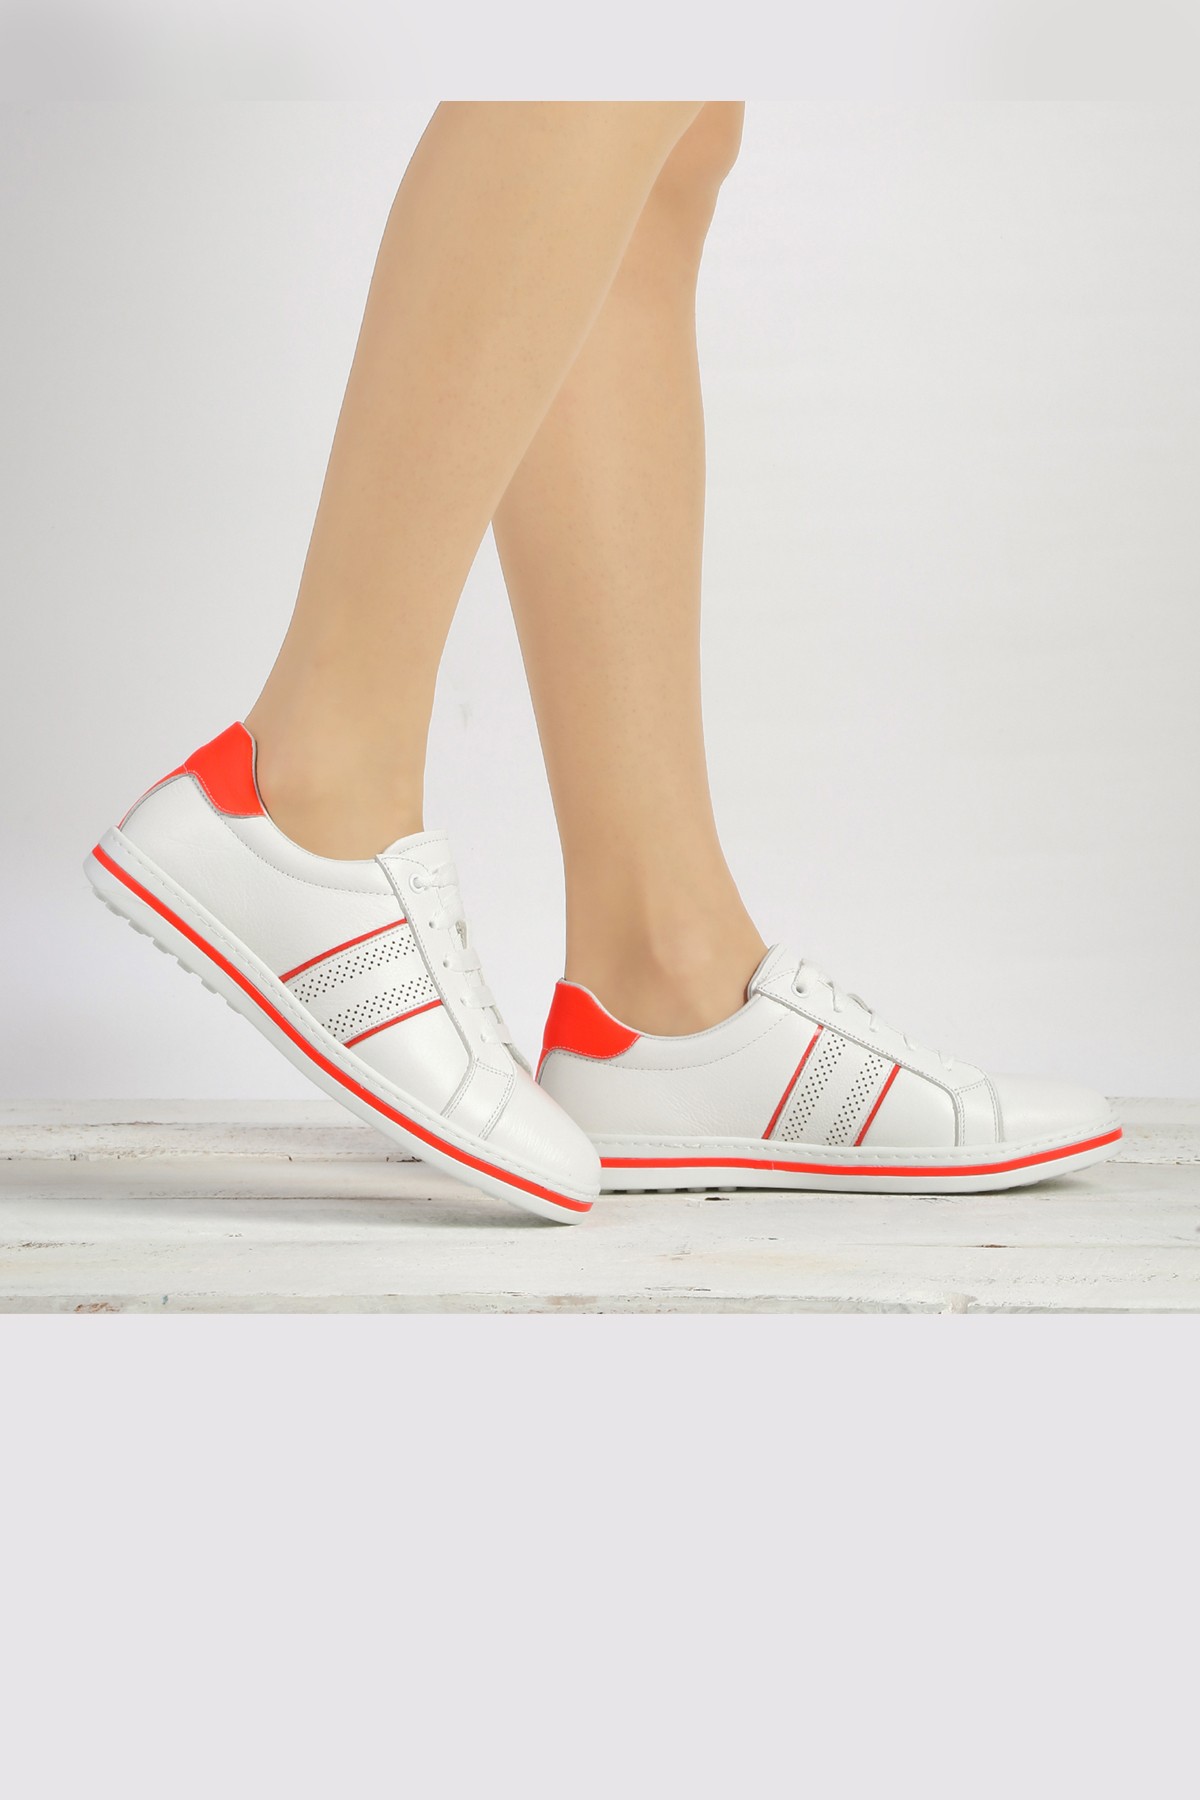 Cooliza Hakiki Deri Bağcıklı Renkli Rahat Kadın Günlük Yürüyüş Spor Ayakkabı - Beyaz-Neon Kırmızı